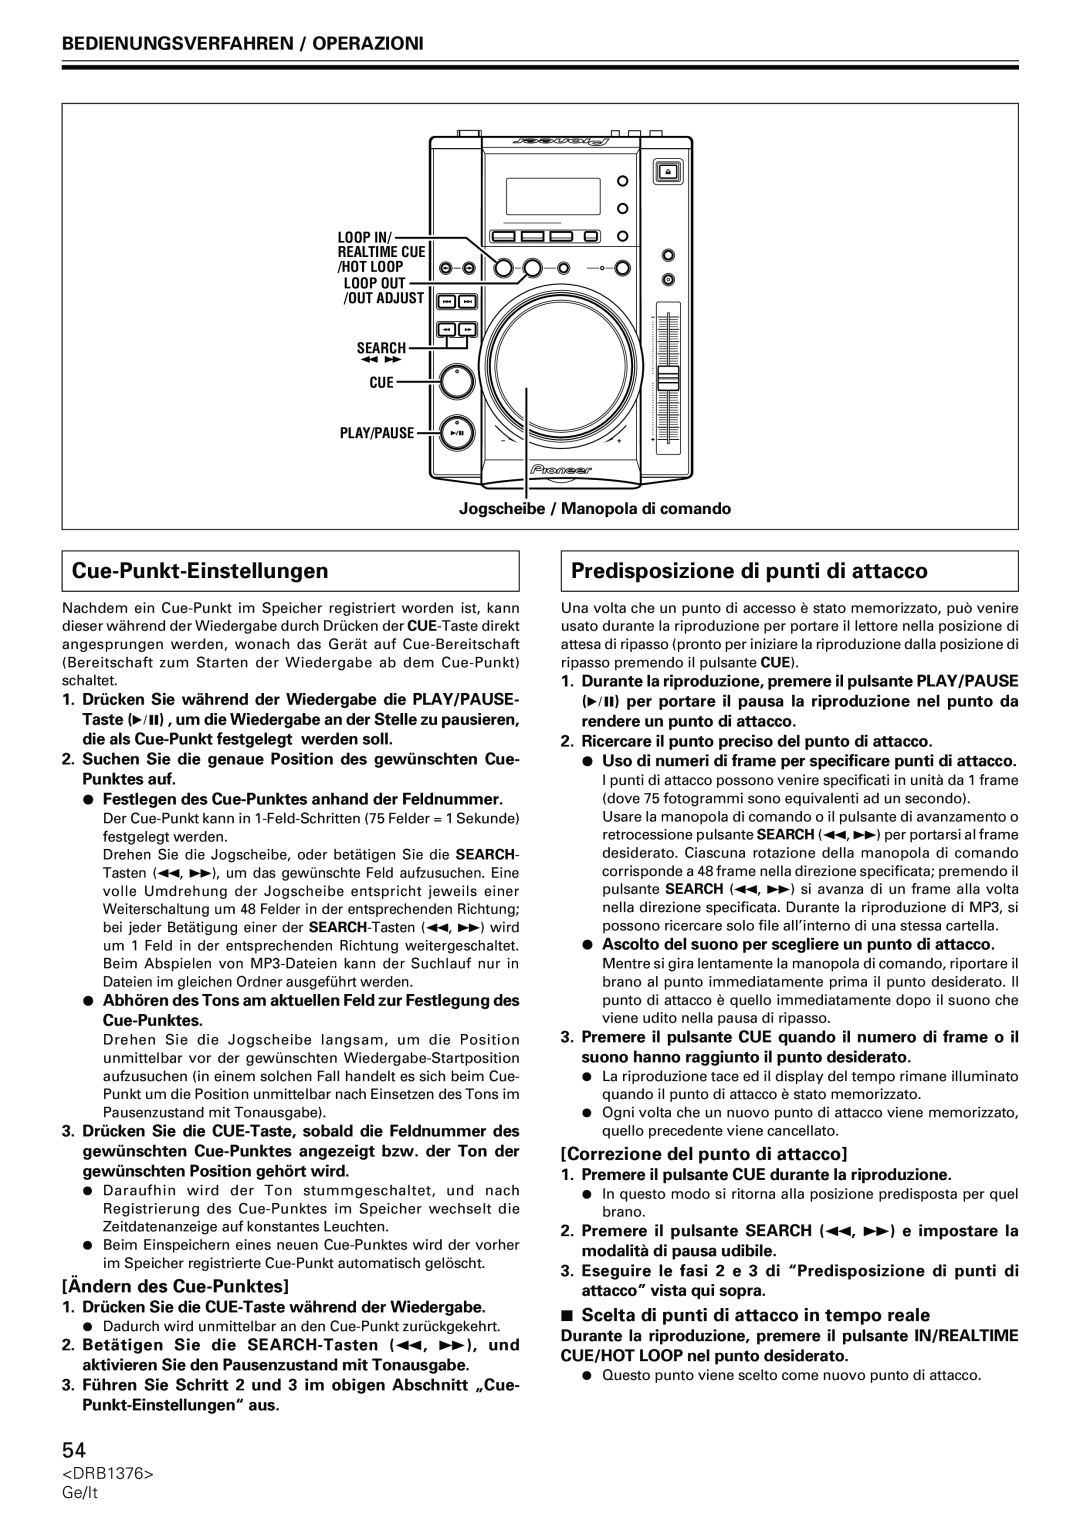 Pioneer CDJ-200 manual Cue-Punkt-Einstellungen, Predisposizione di punti di attacco, Ändern des Cue-Punktes 